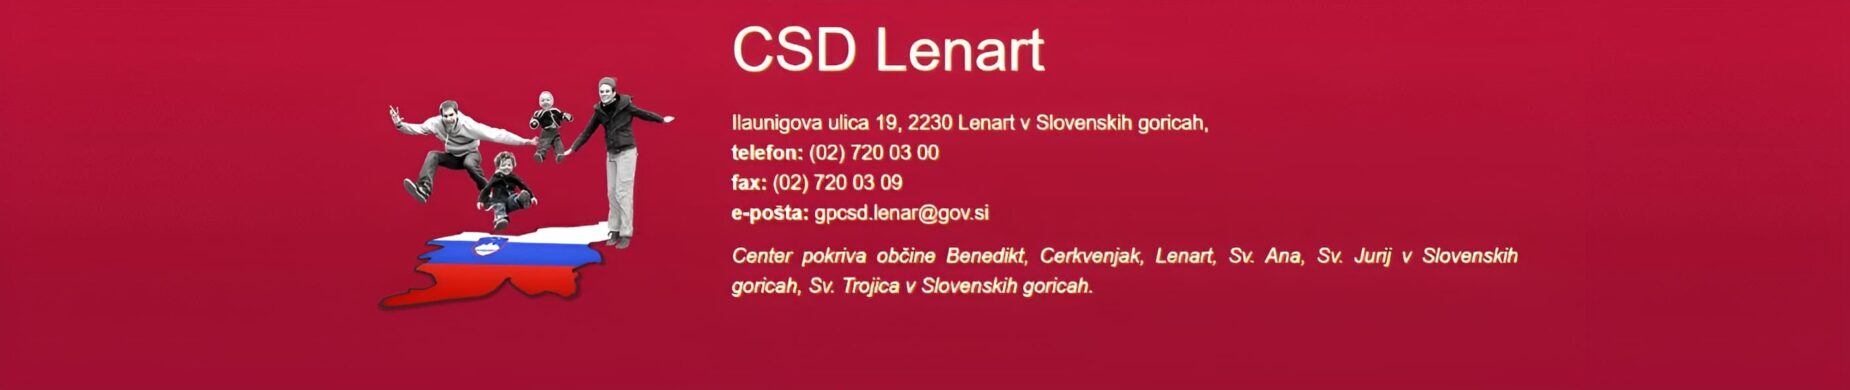 CSD Lenart slider